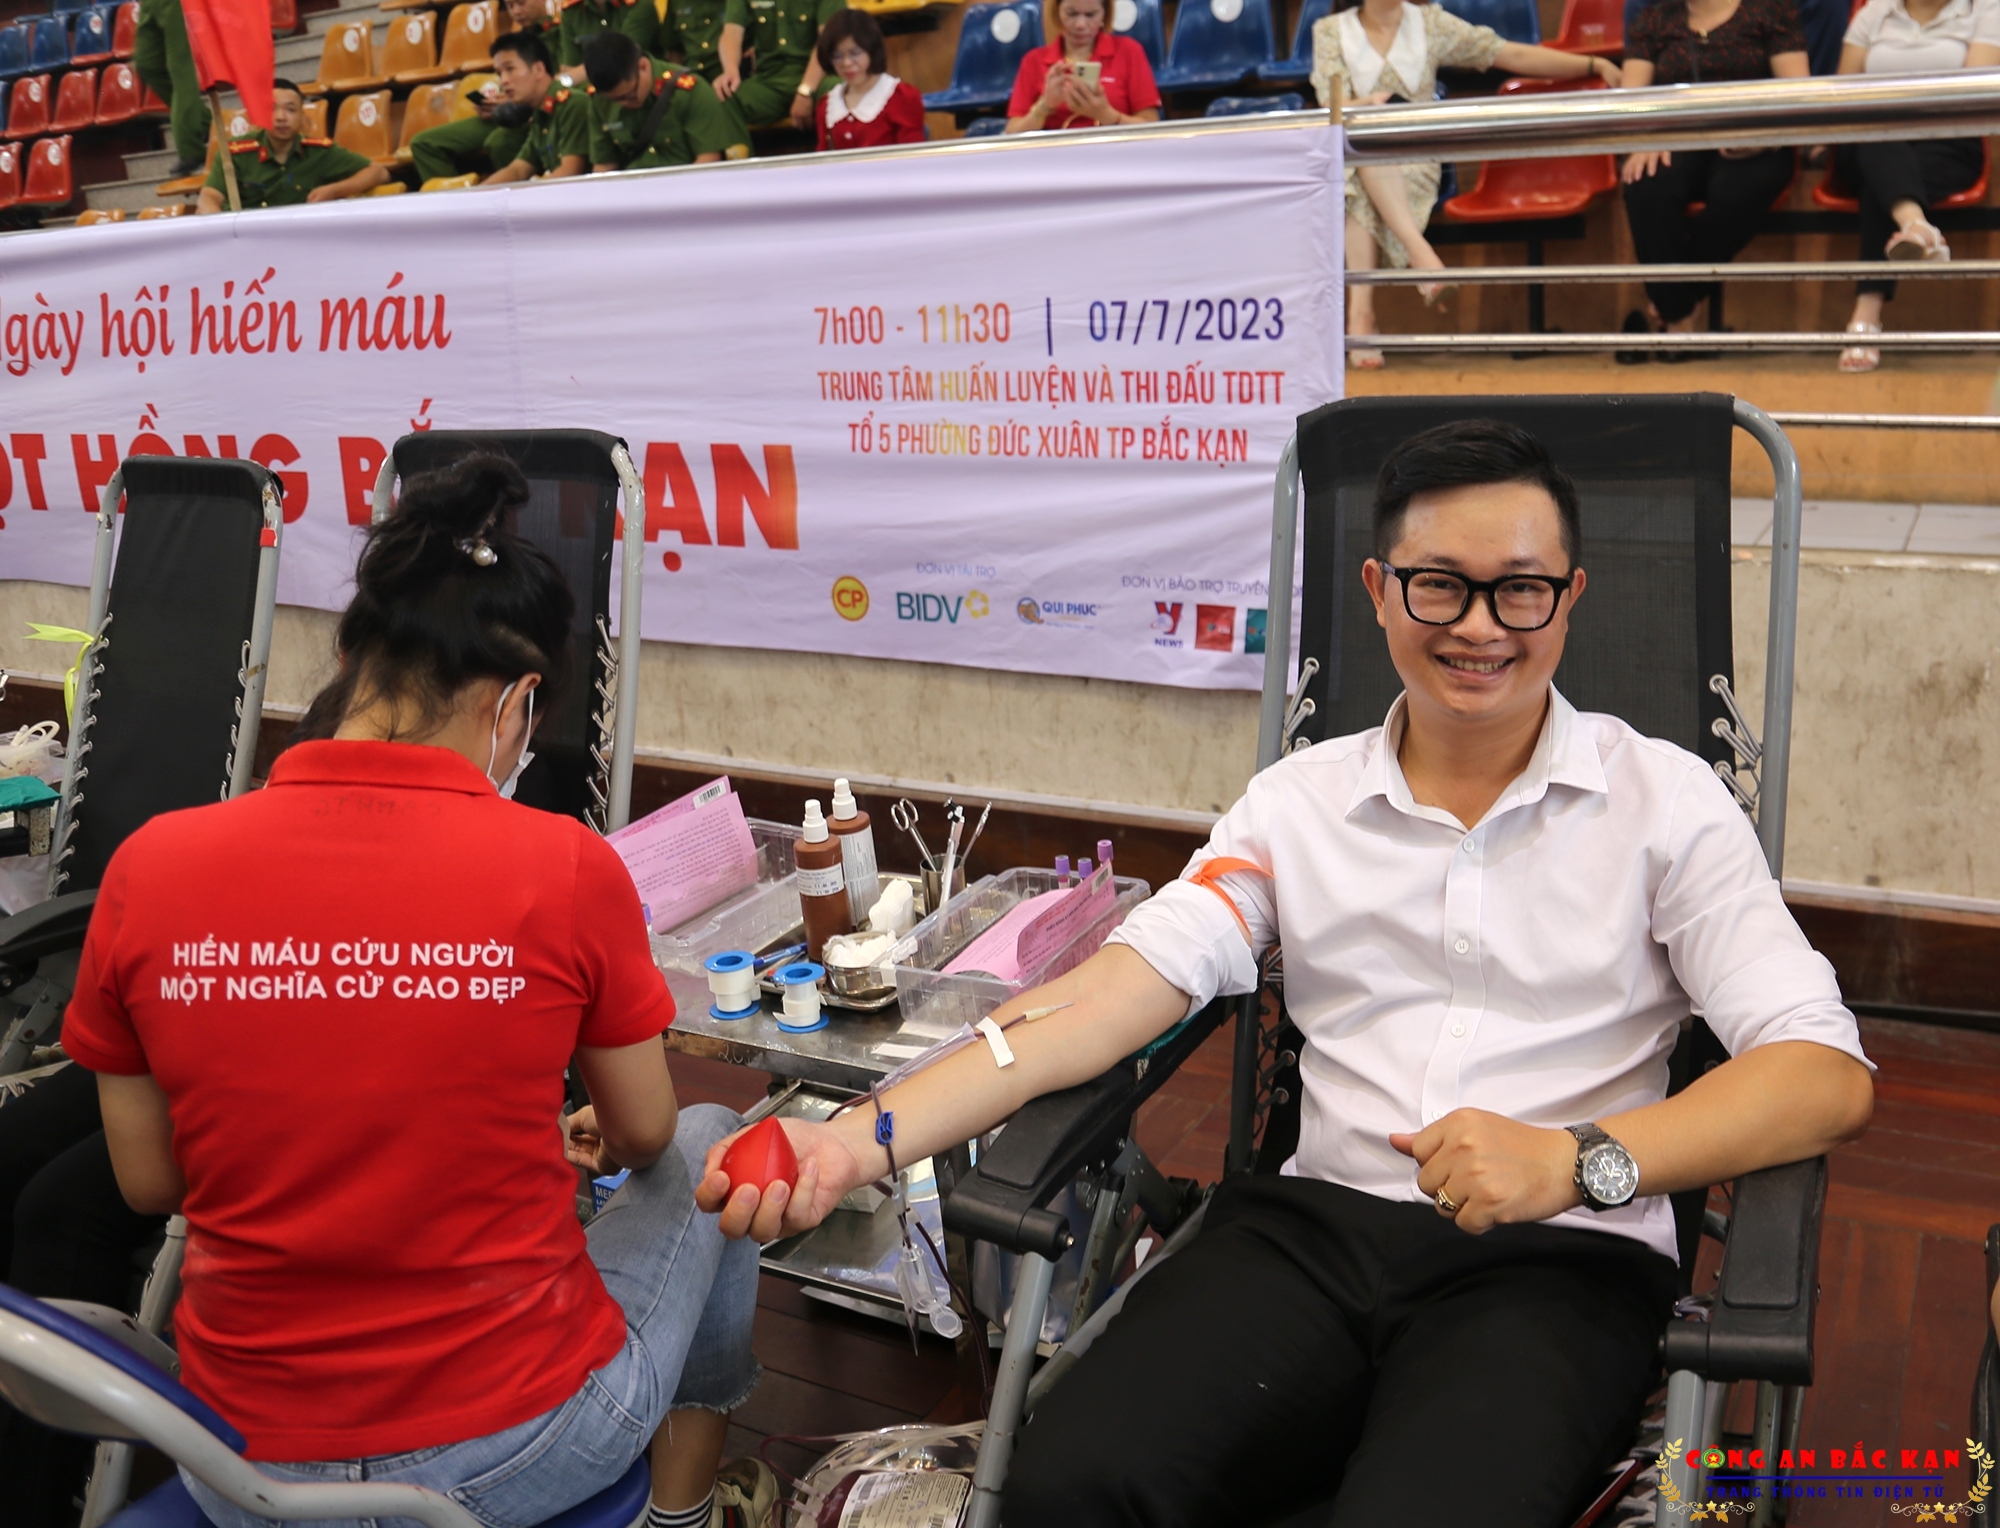 Chương trình Hành trình đỏ - kết nối dòng máu Việt năm 2023 tiếp nhận được hơn 1.000 đơn vị máu - Ảnh minh hoạ 2